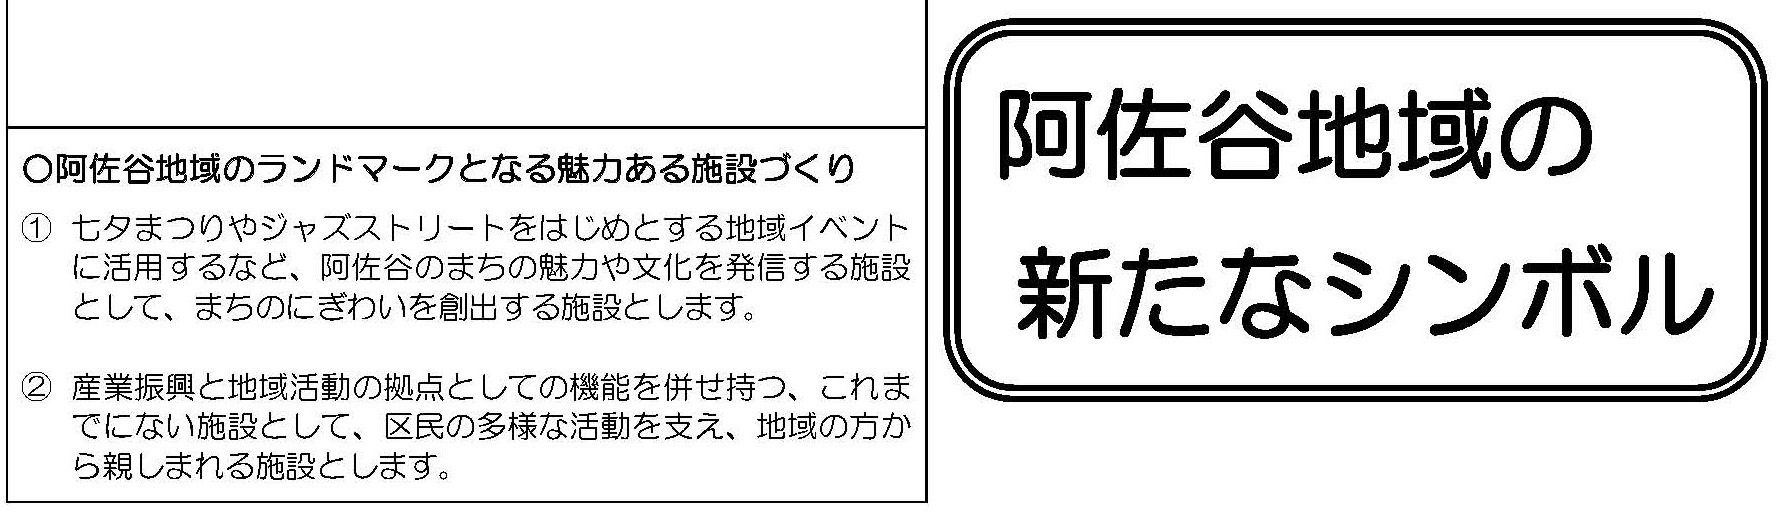 http://yamadakohei.jp/blog_upfile/%E6%9D%89%E4%B8%80%E5%B0%8F%E8%A4%87%E5%90%88%E5%8C%96.jpg